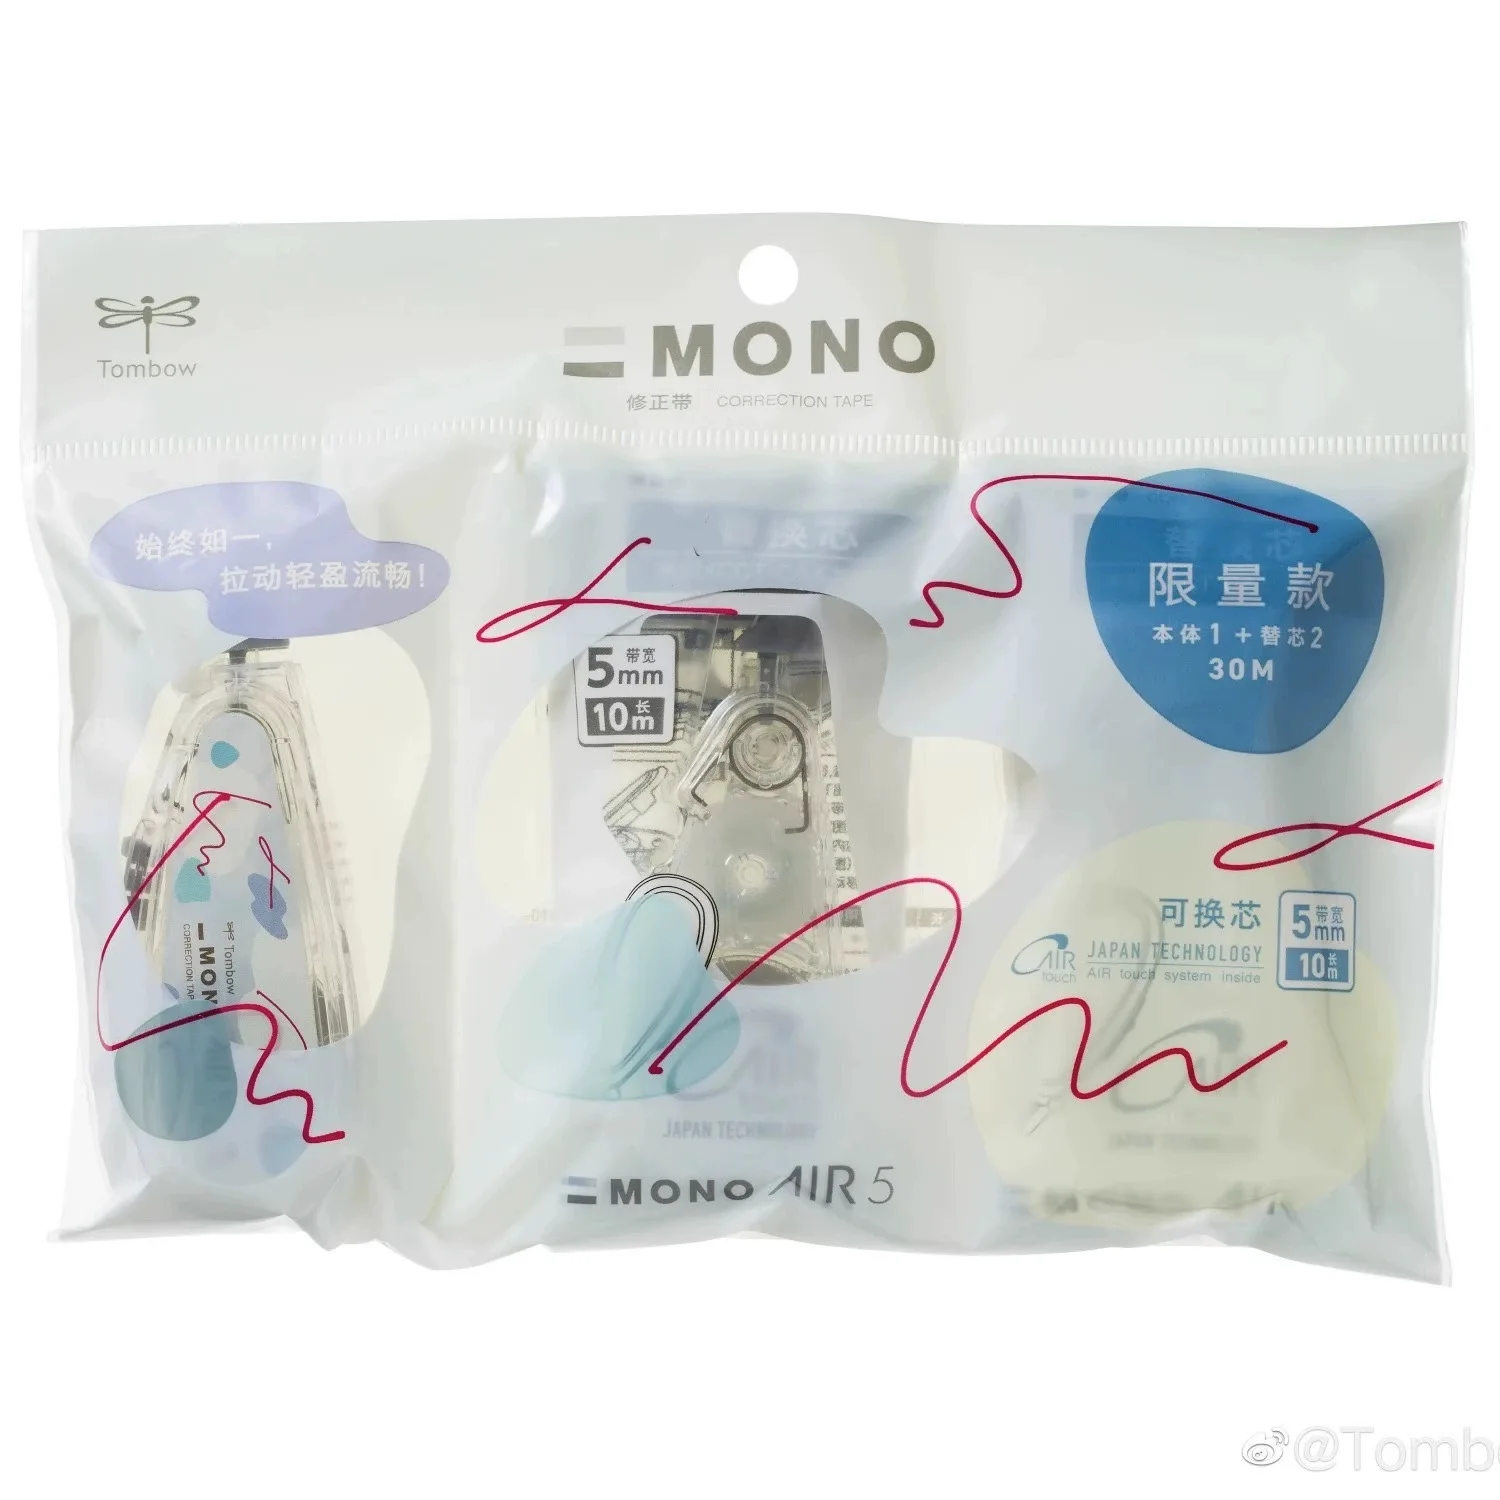 Tombow MONO Correction Tape, Non-Refillable, 4mm x 10m, White Tape